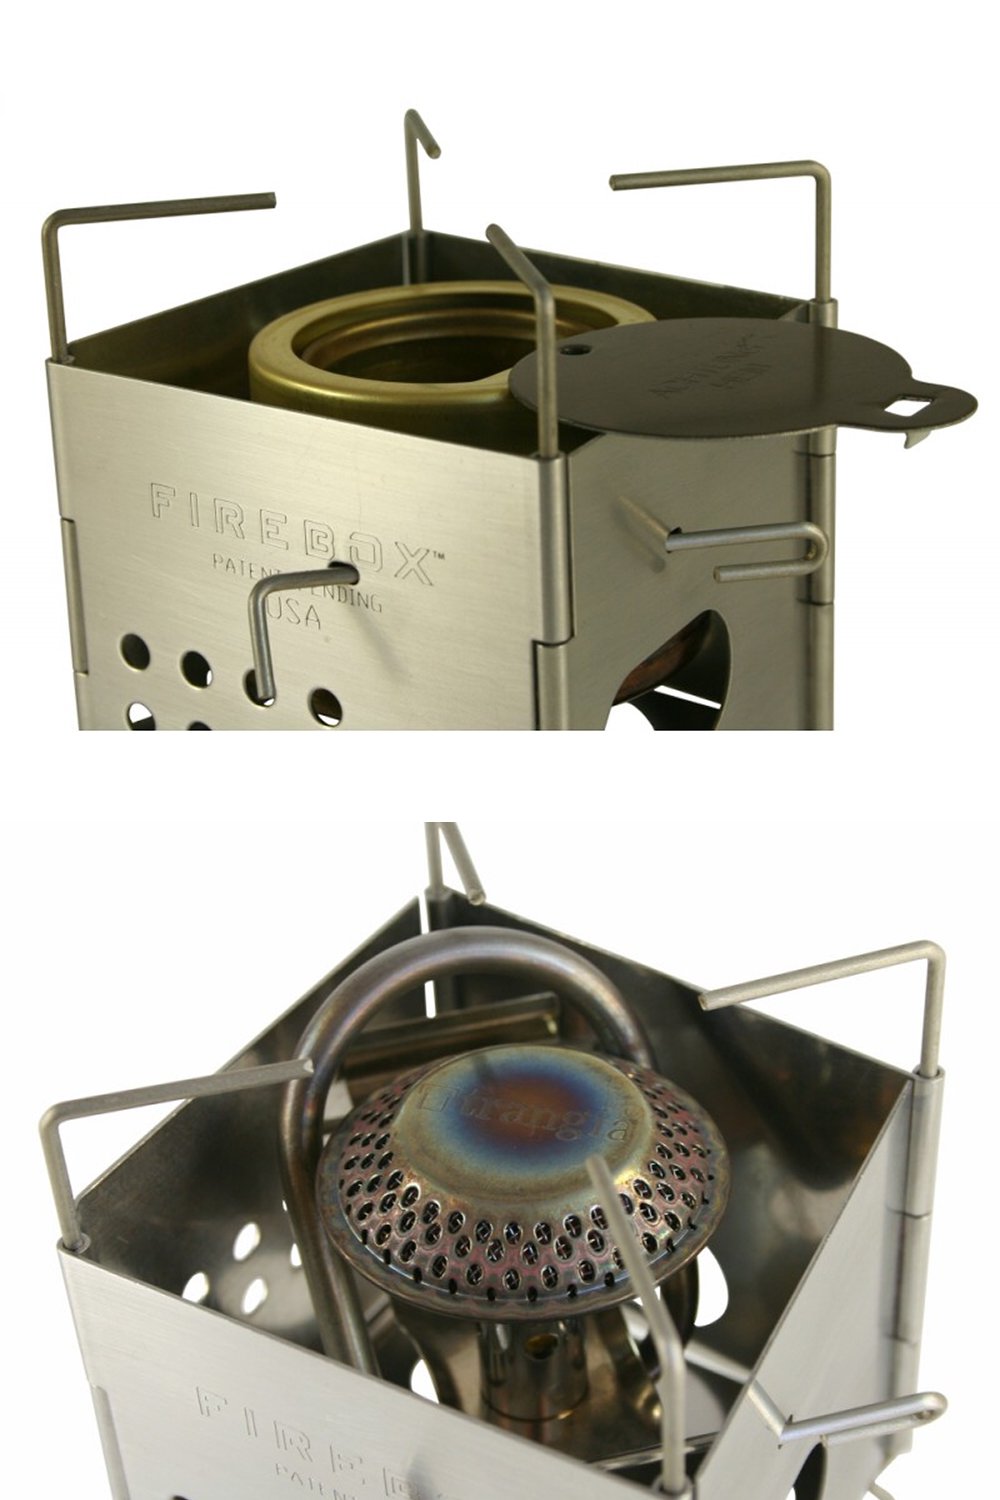 ファイヤーボックス ナノステンレスボックスセット キャンプストーブ FIREBOX Nano Stainless Steel Box Set